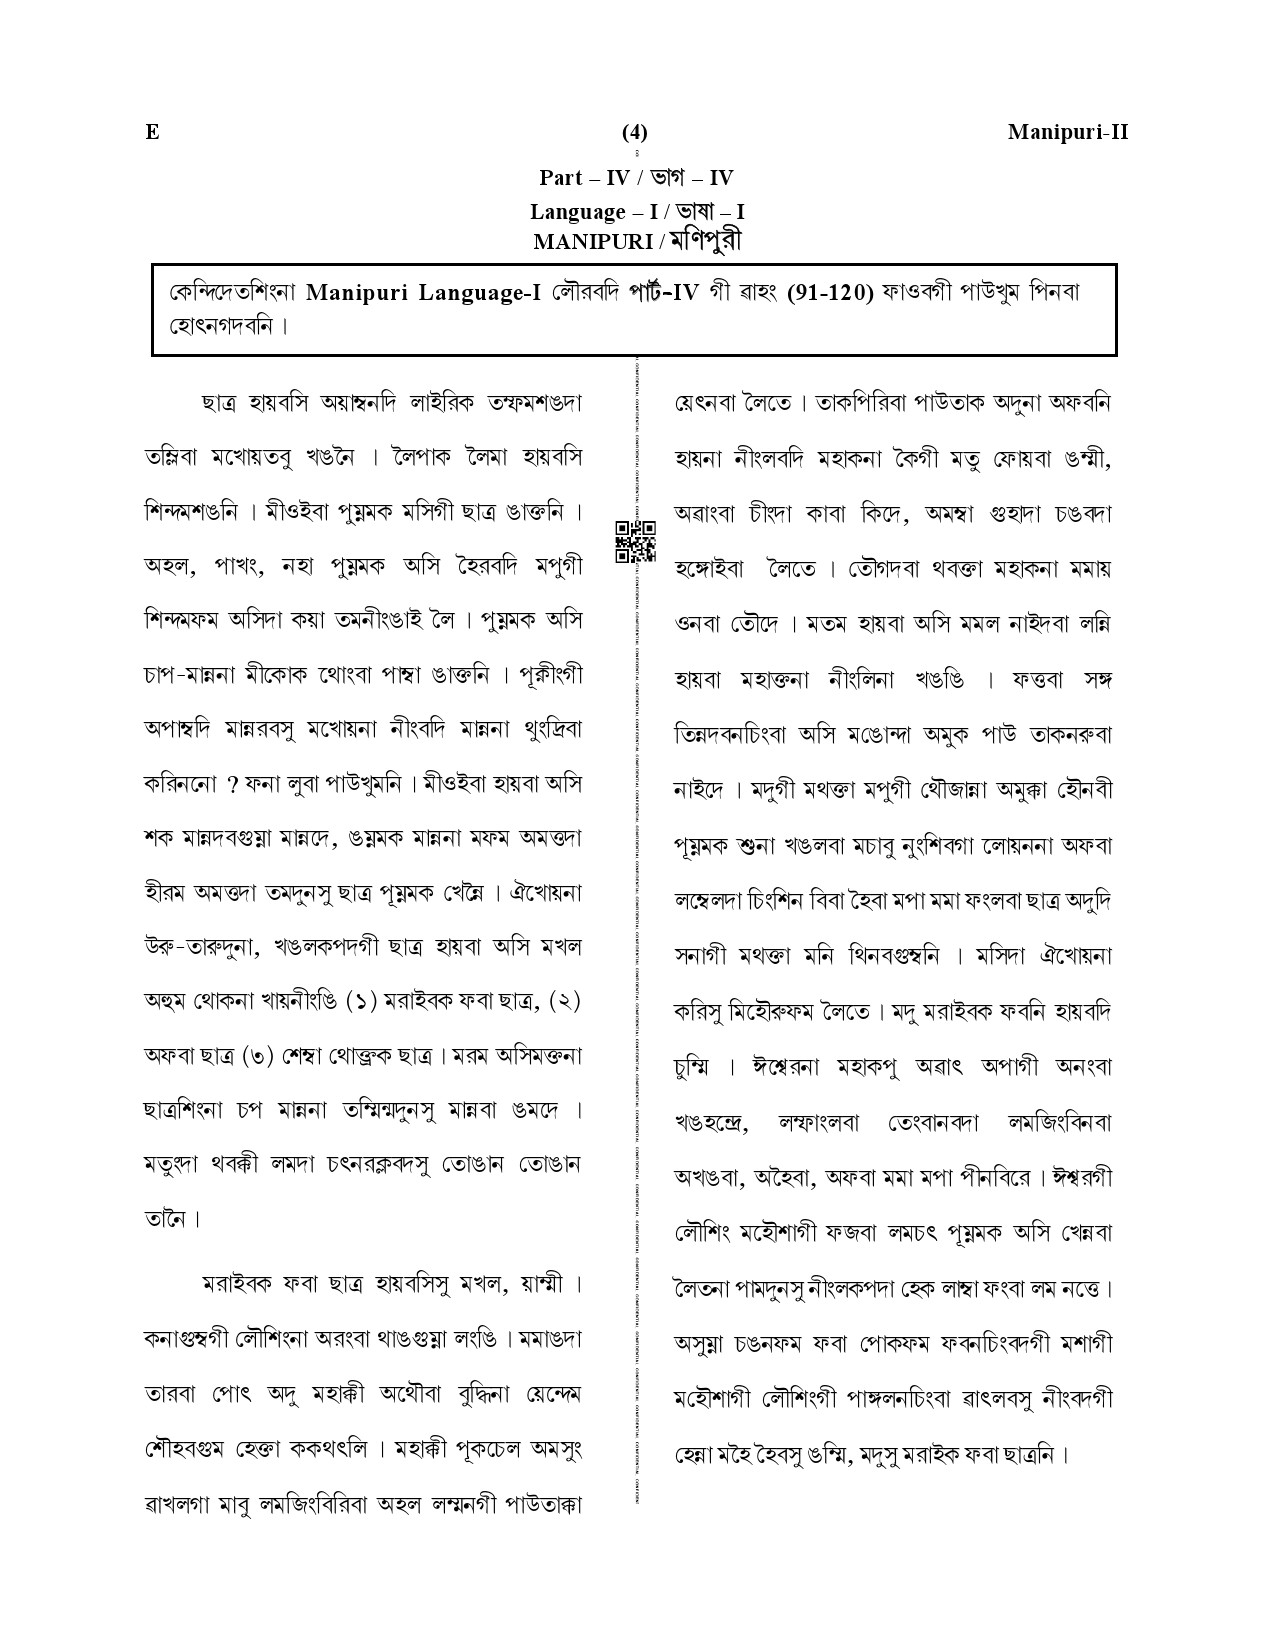 CTET December 2019 Paper 2 Part IV Language 1 Manipuri 1